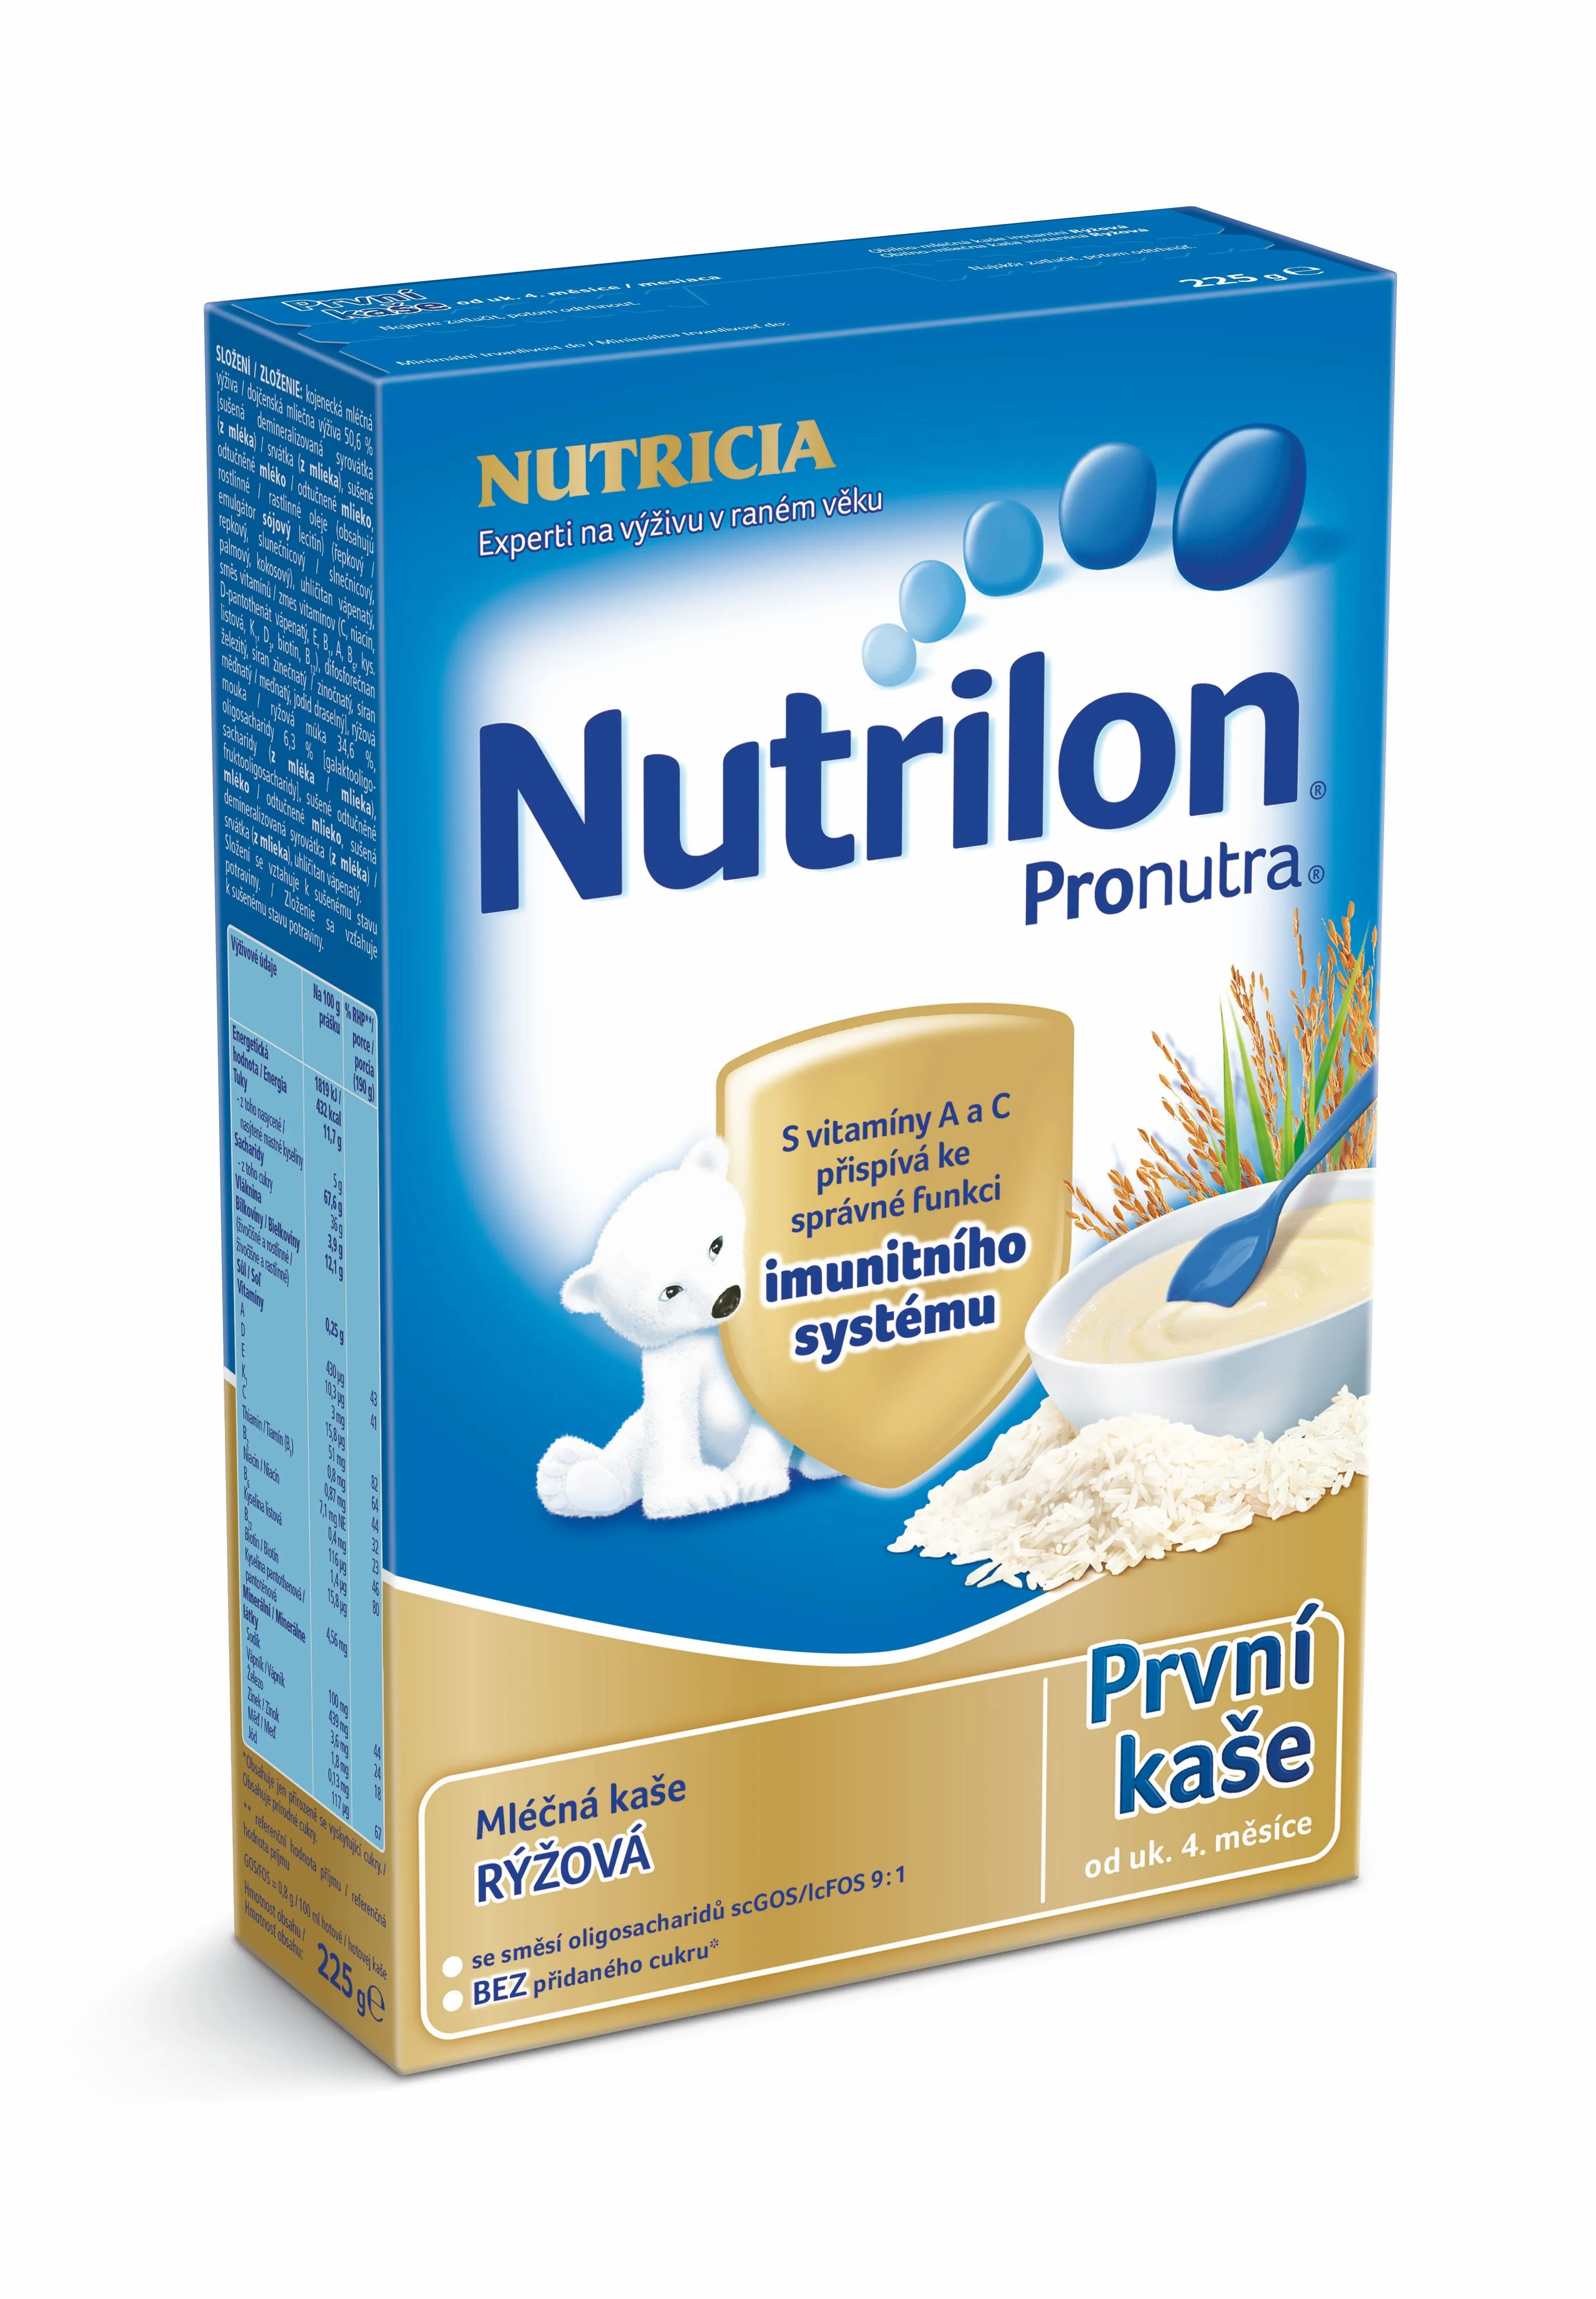 Nutrilon Pronutra První kaše mléčná rýžová 225 g